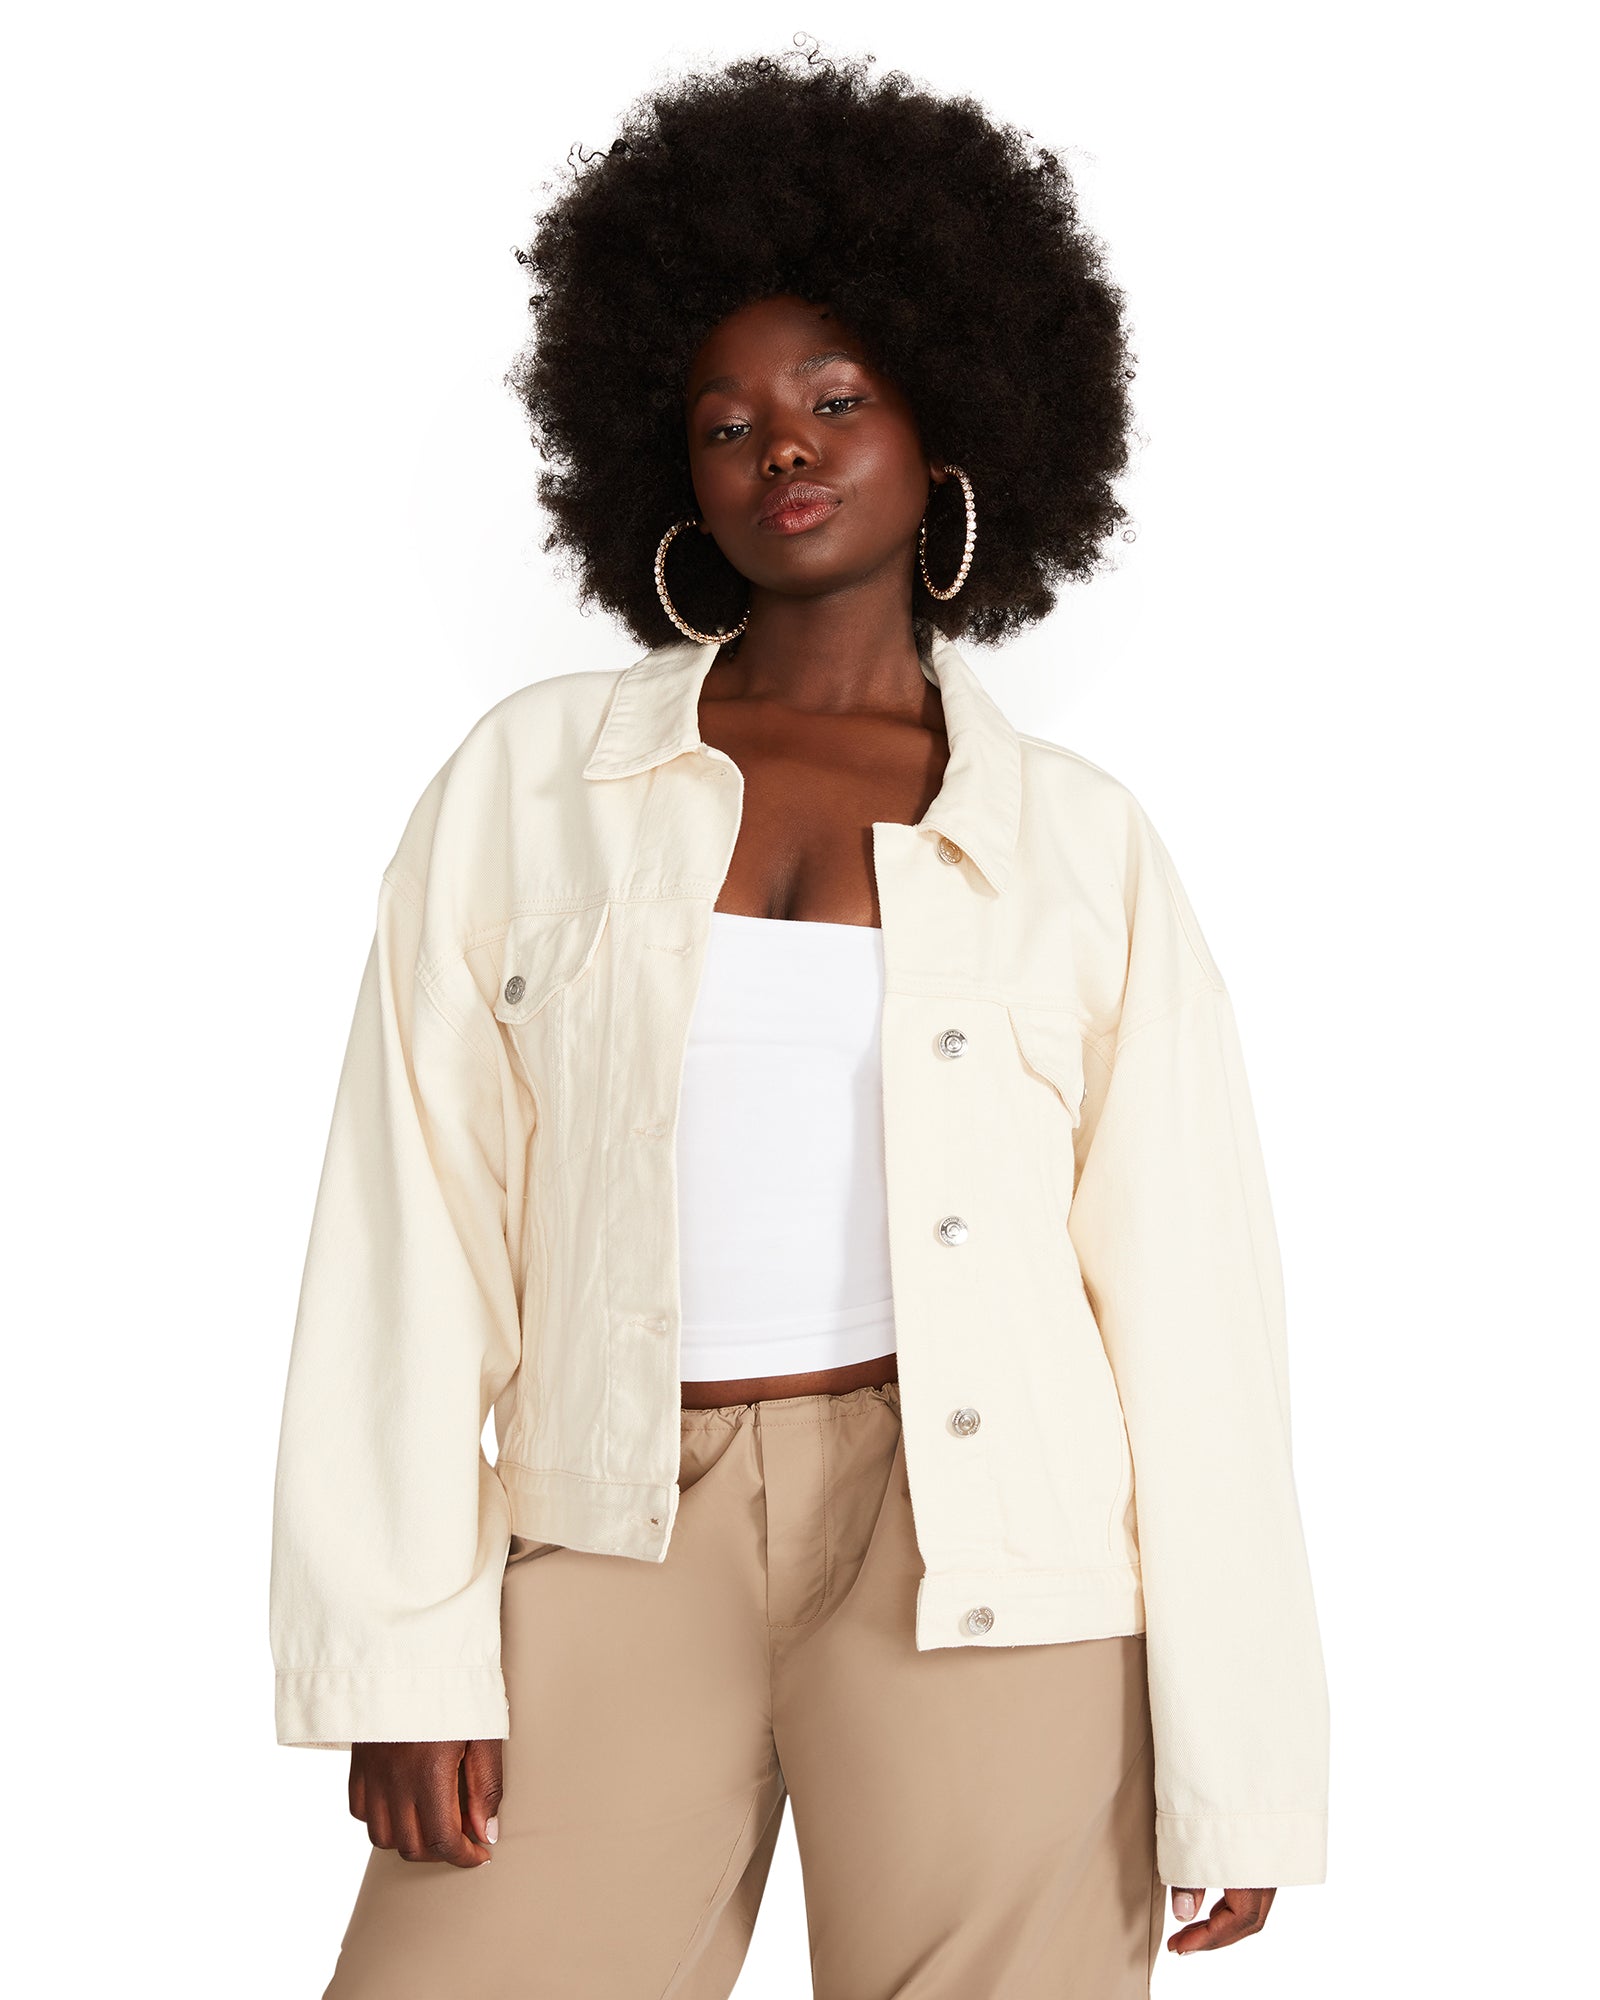 Jackets & Coats | Women's Jackets, Coats & Tops – Steve Madden